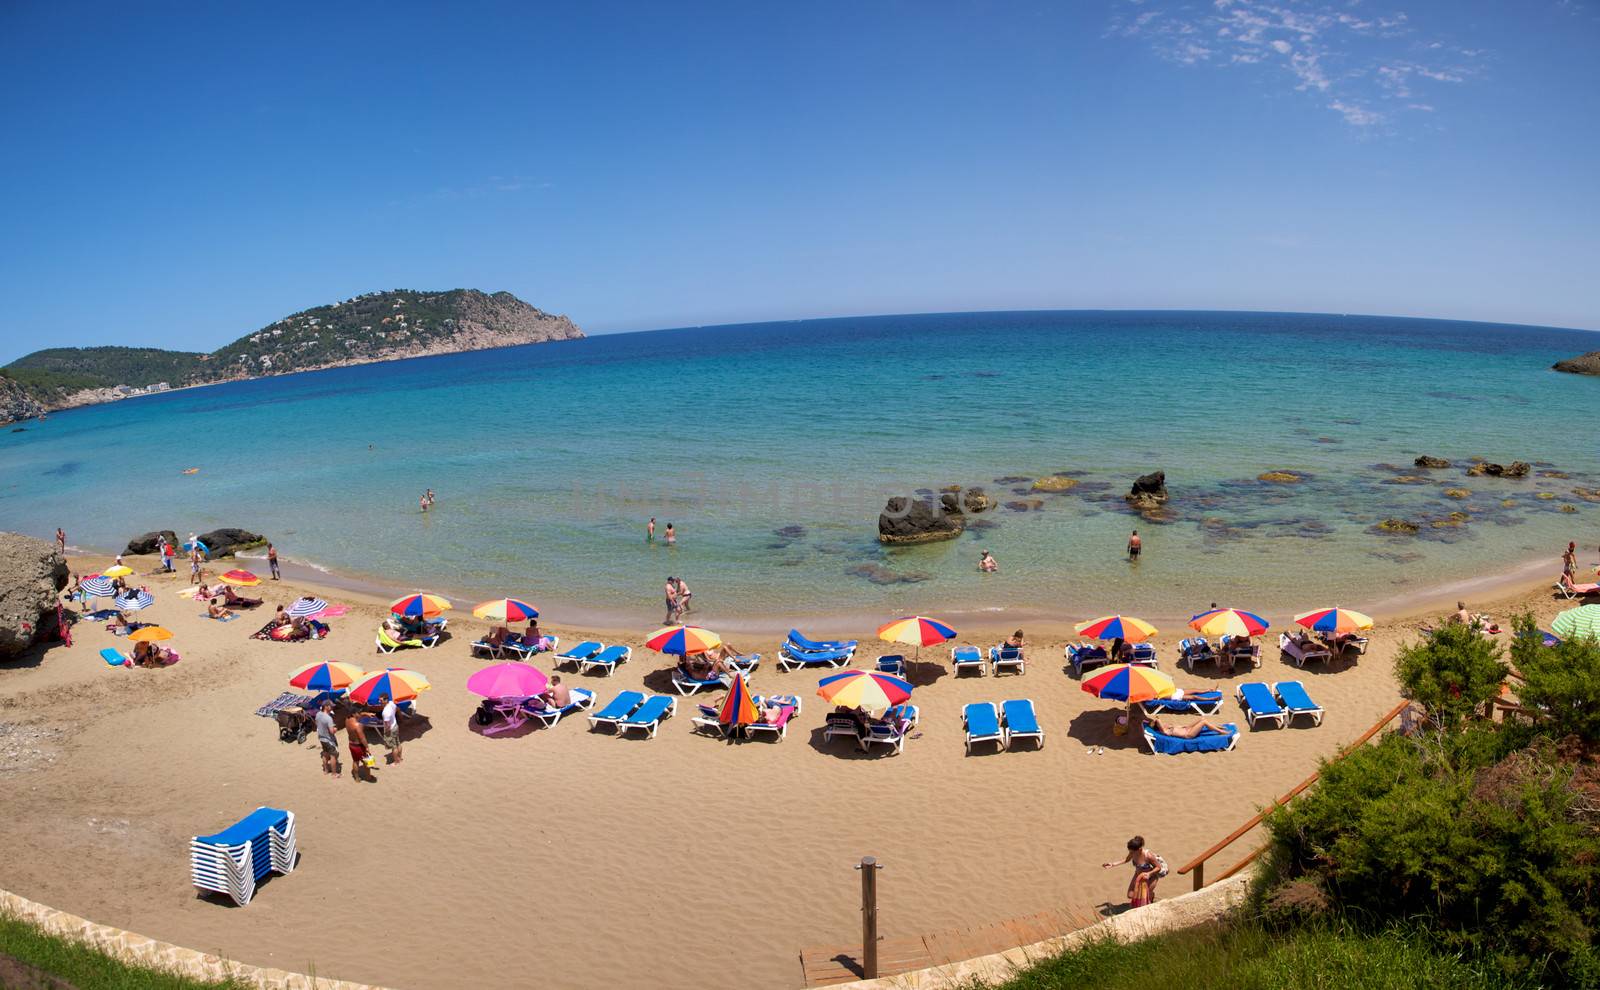 Beach of Ibiza by watchtheworld